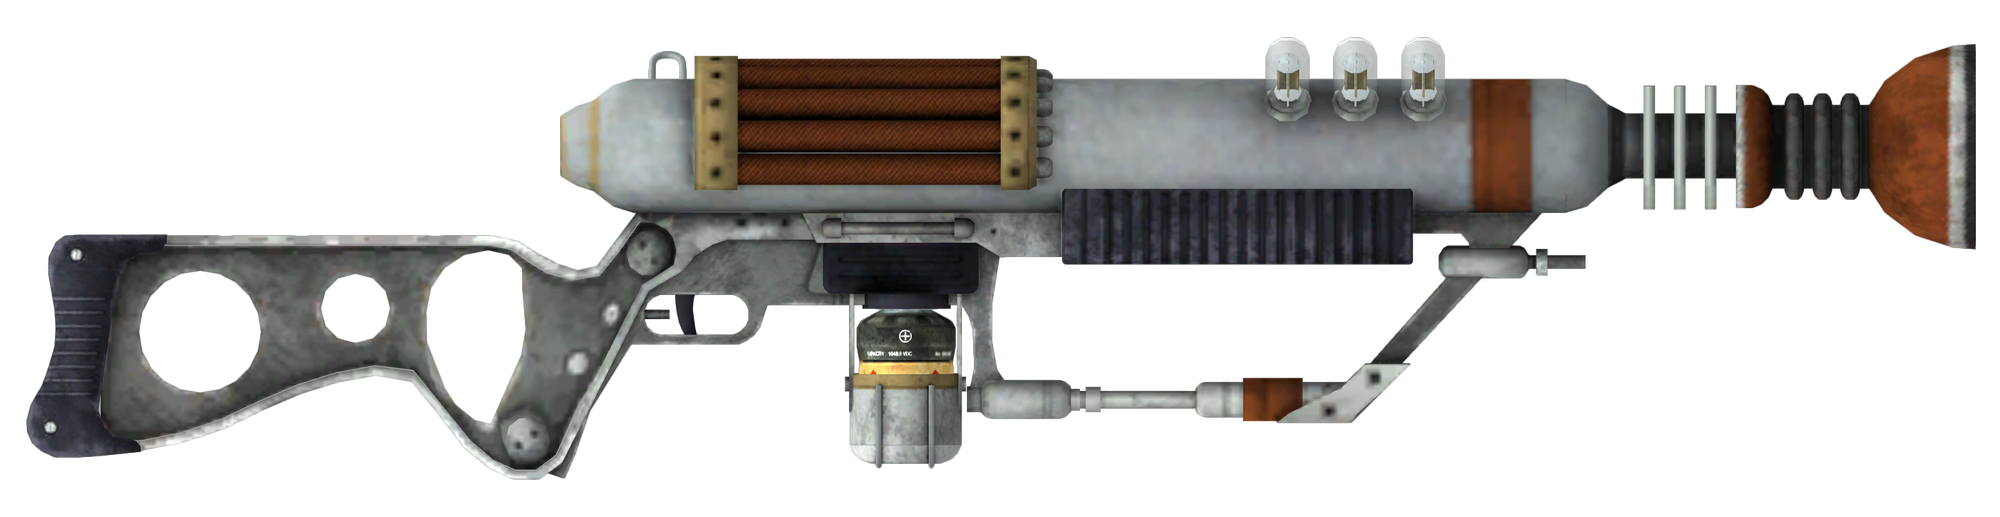 Fallout 4 винтовка с подзарядкой фото 10